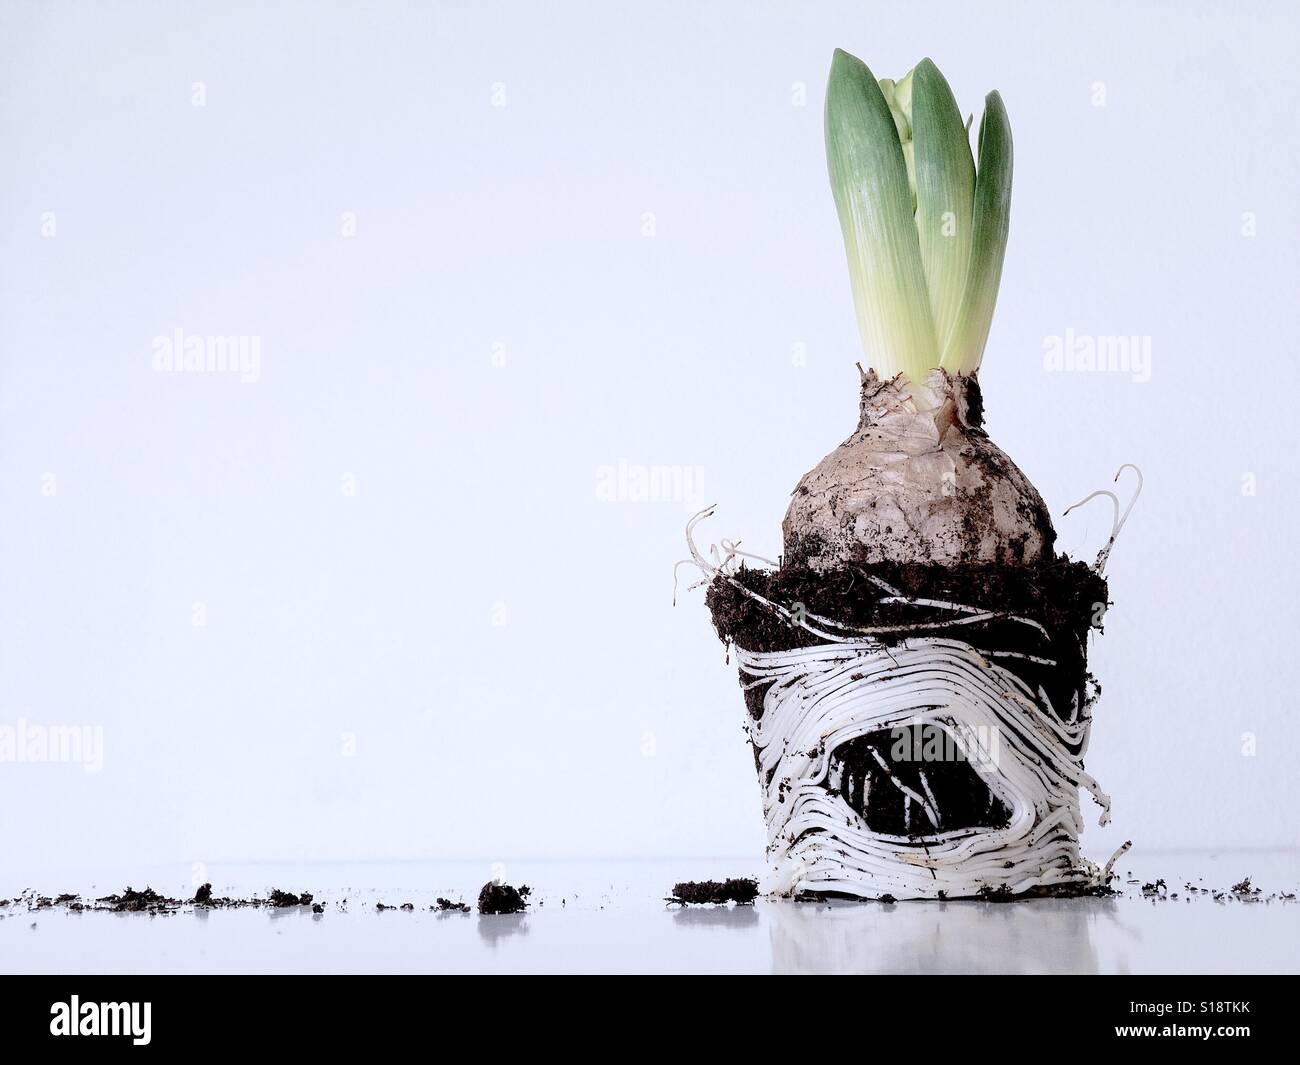 Pianta piccola crescita lampadina fuori isolati su sfondo bianco libero spazio di copia Foto Stock